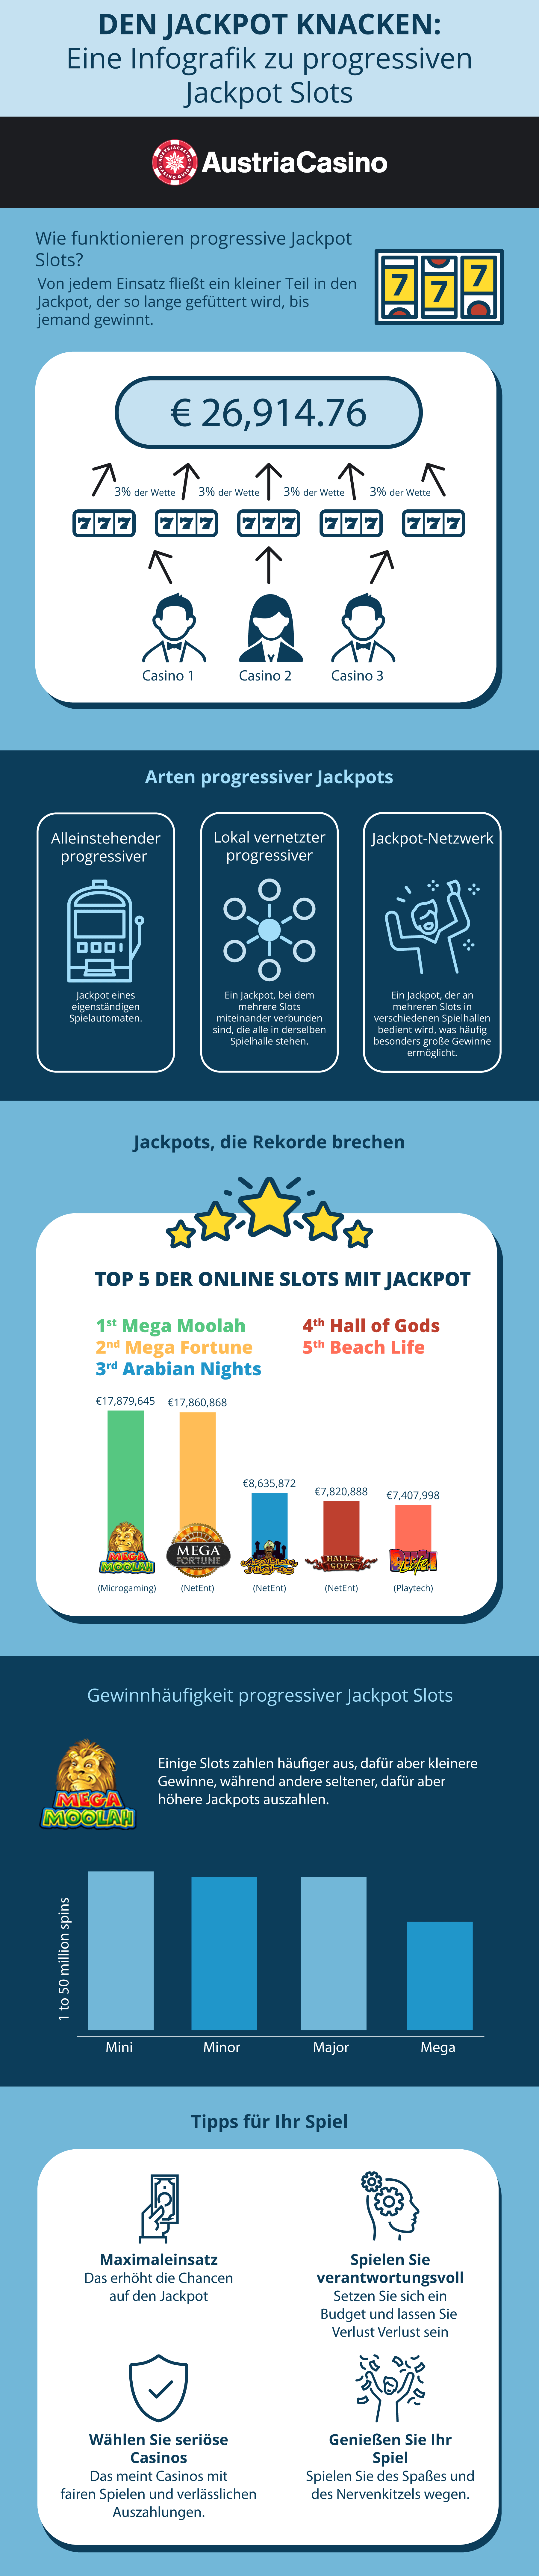 Infografik zu progressiven Jackpot Slots